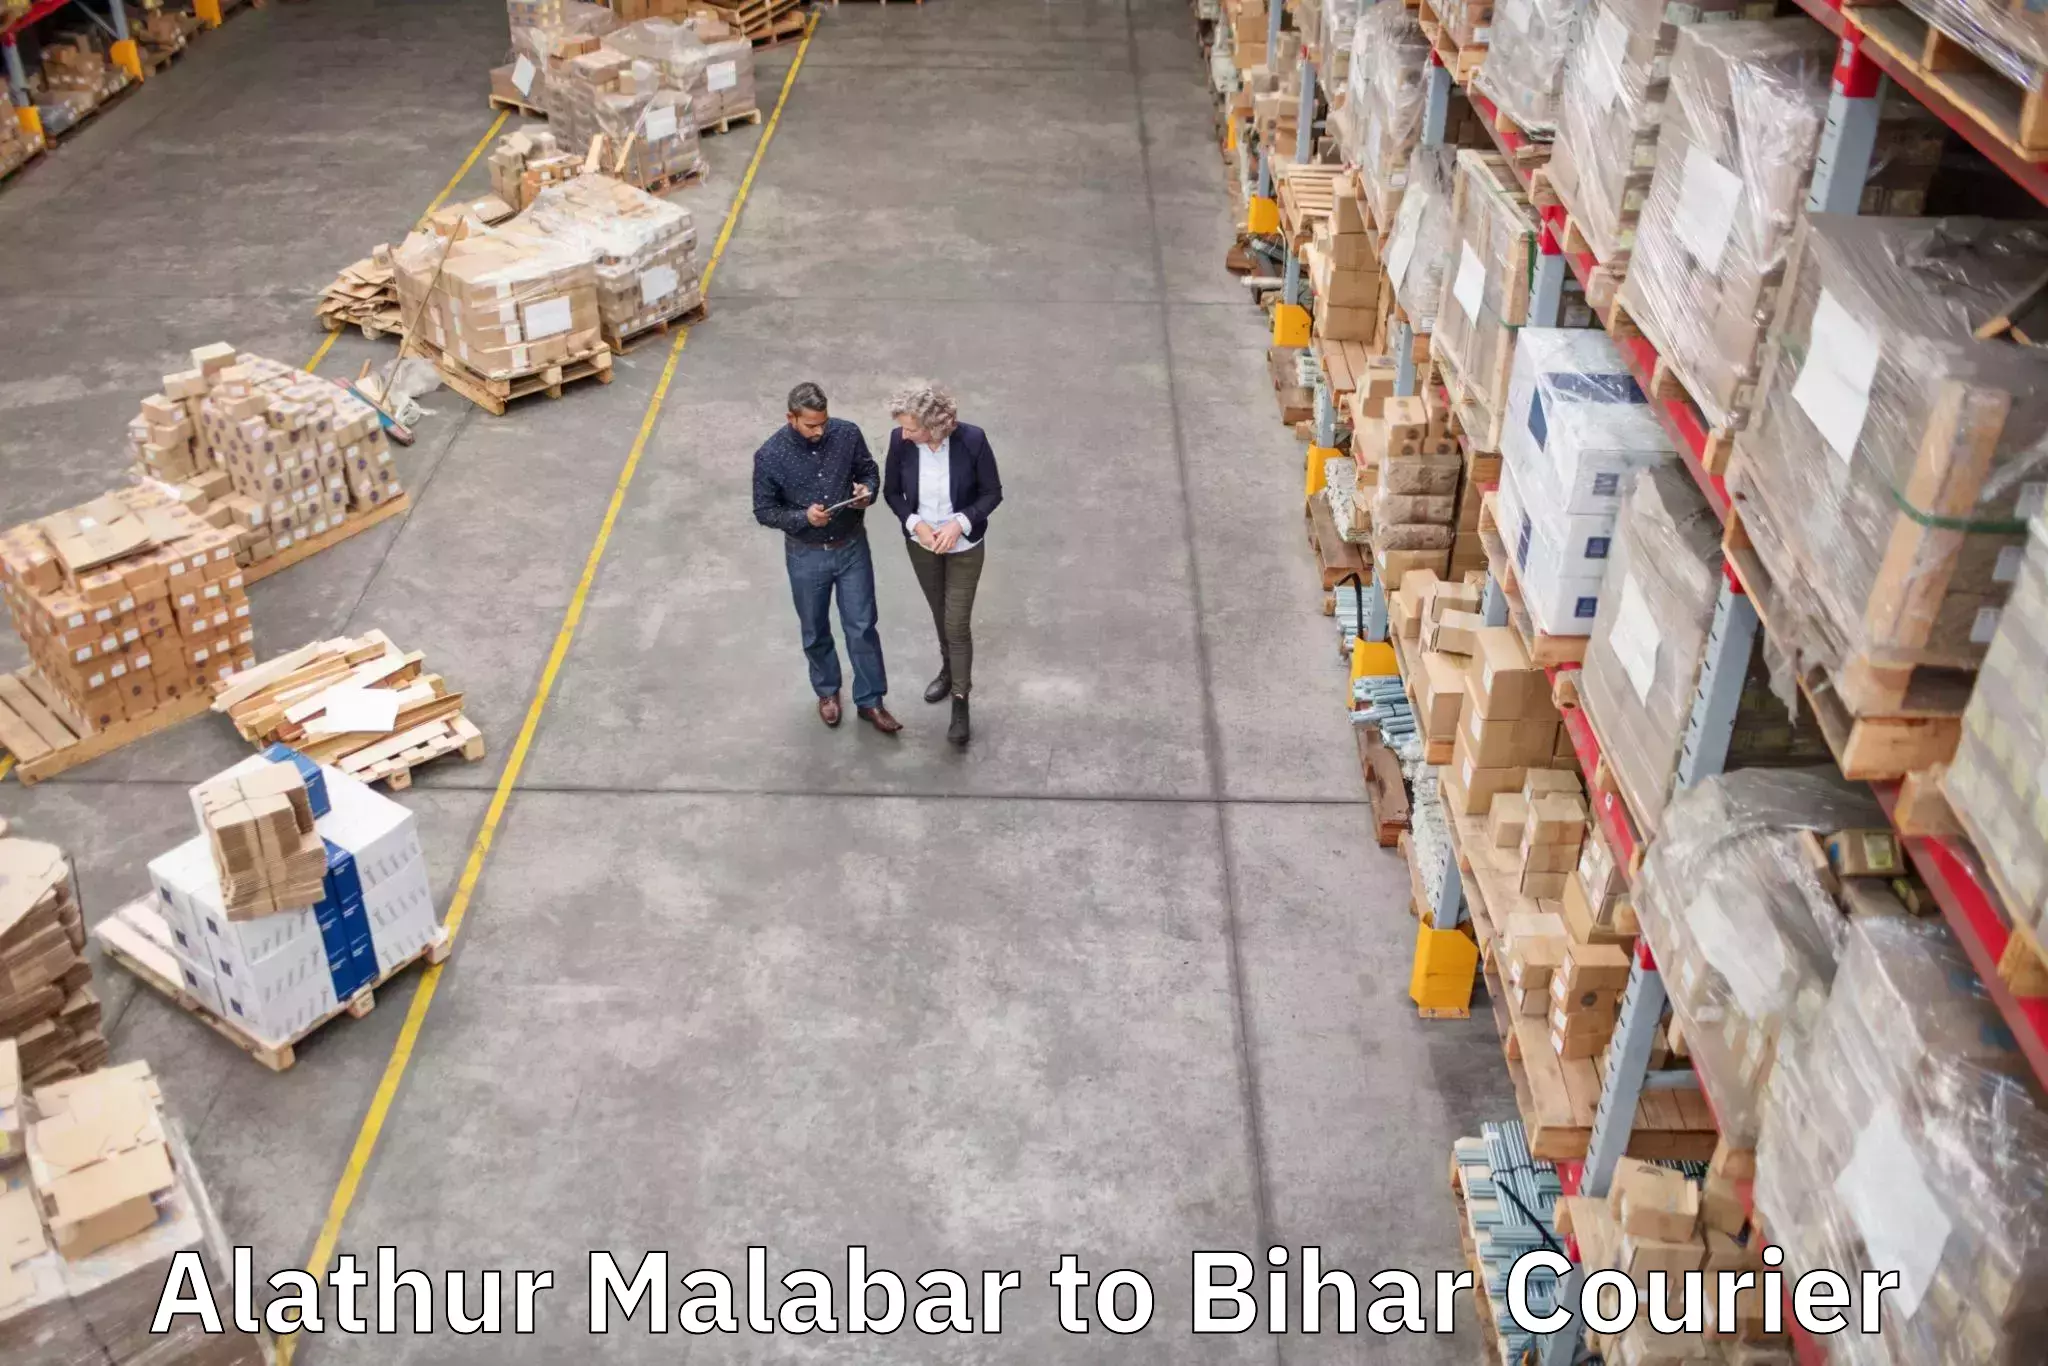 Train station baggage courier Alathur Malabar to Bihar